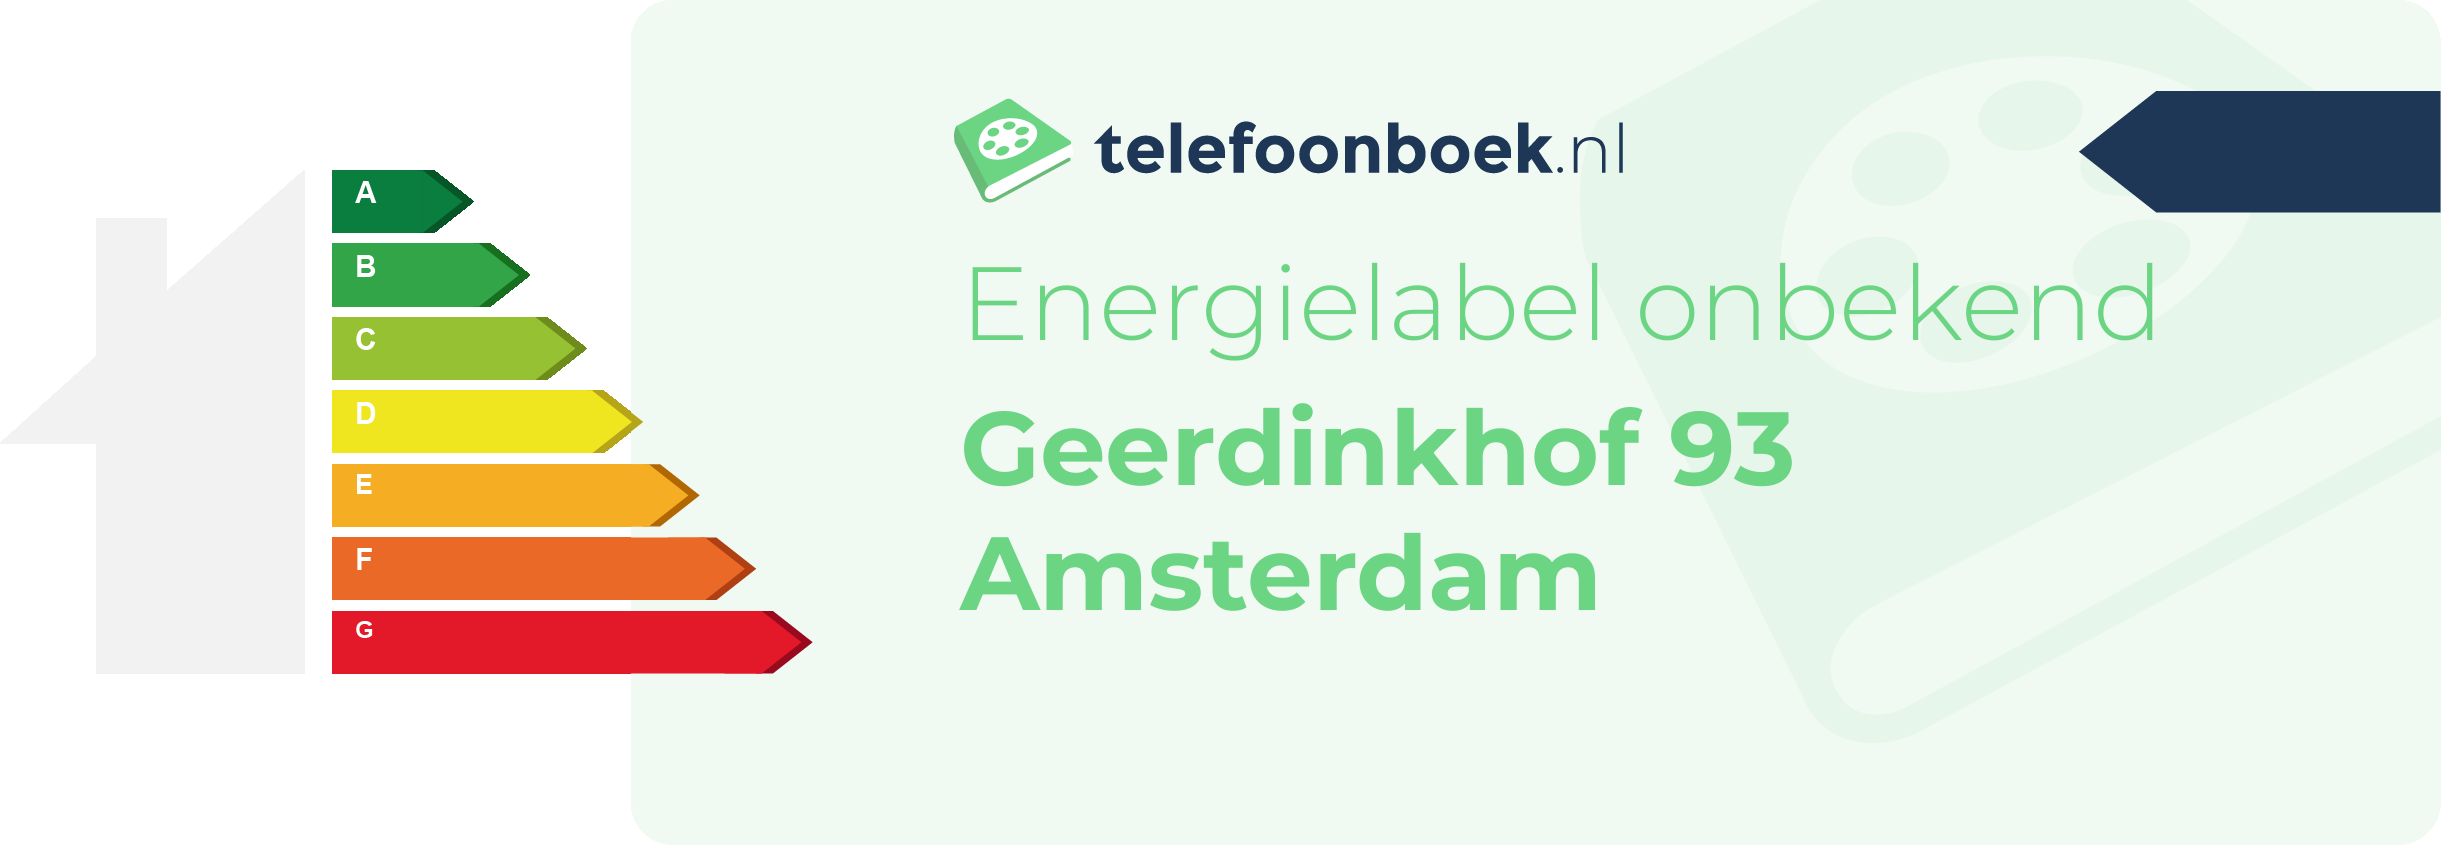 Energielabel Geerdinkhof 93 Amsterdam